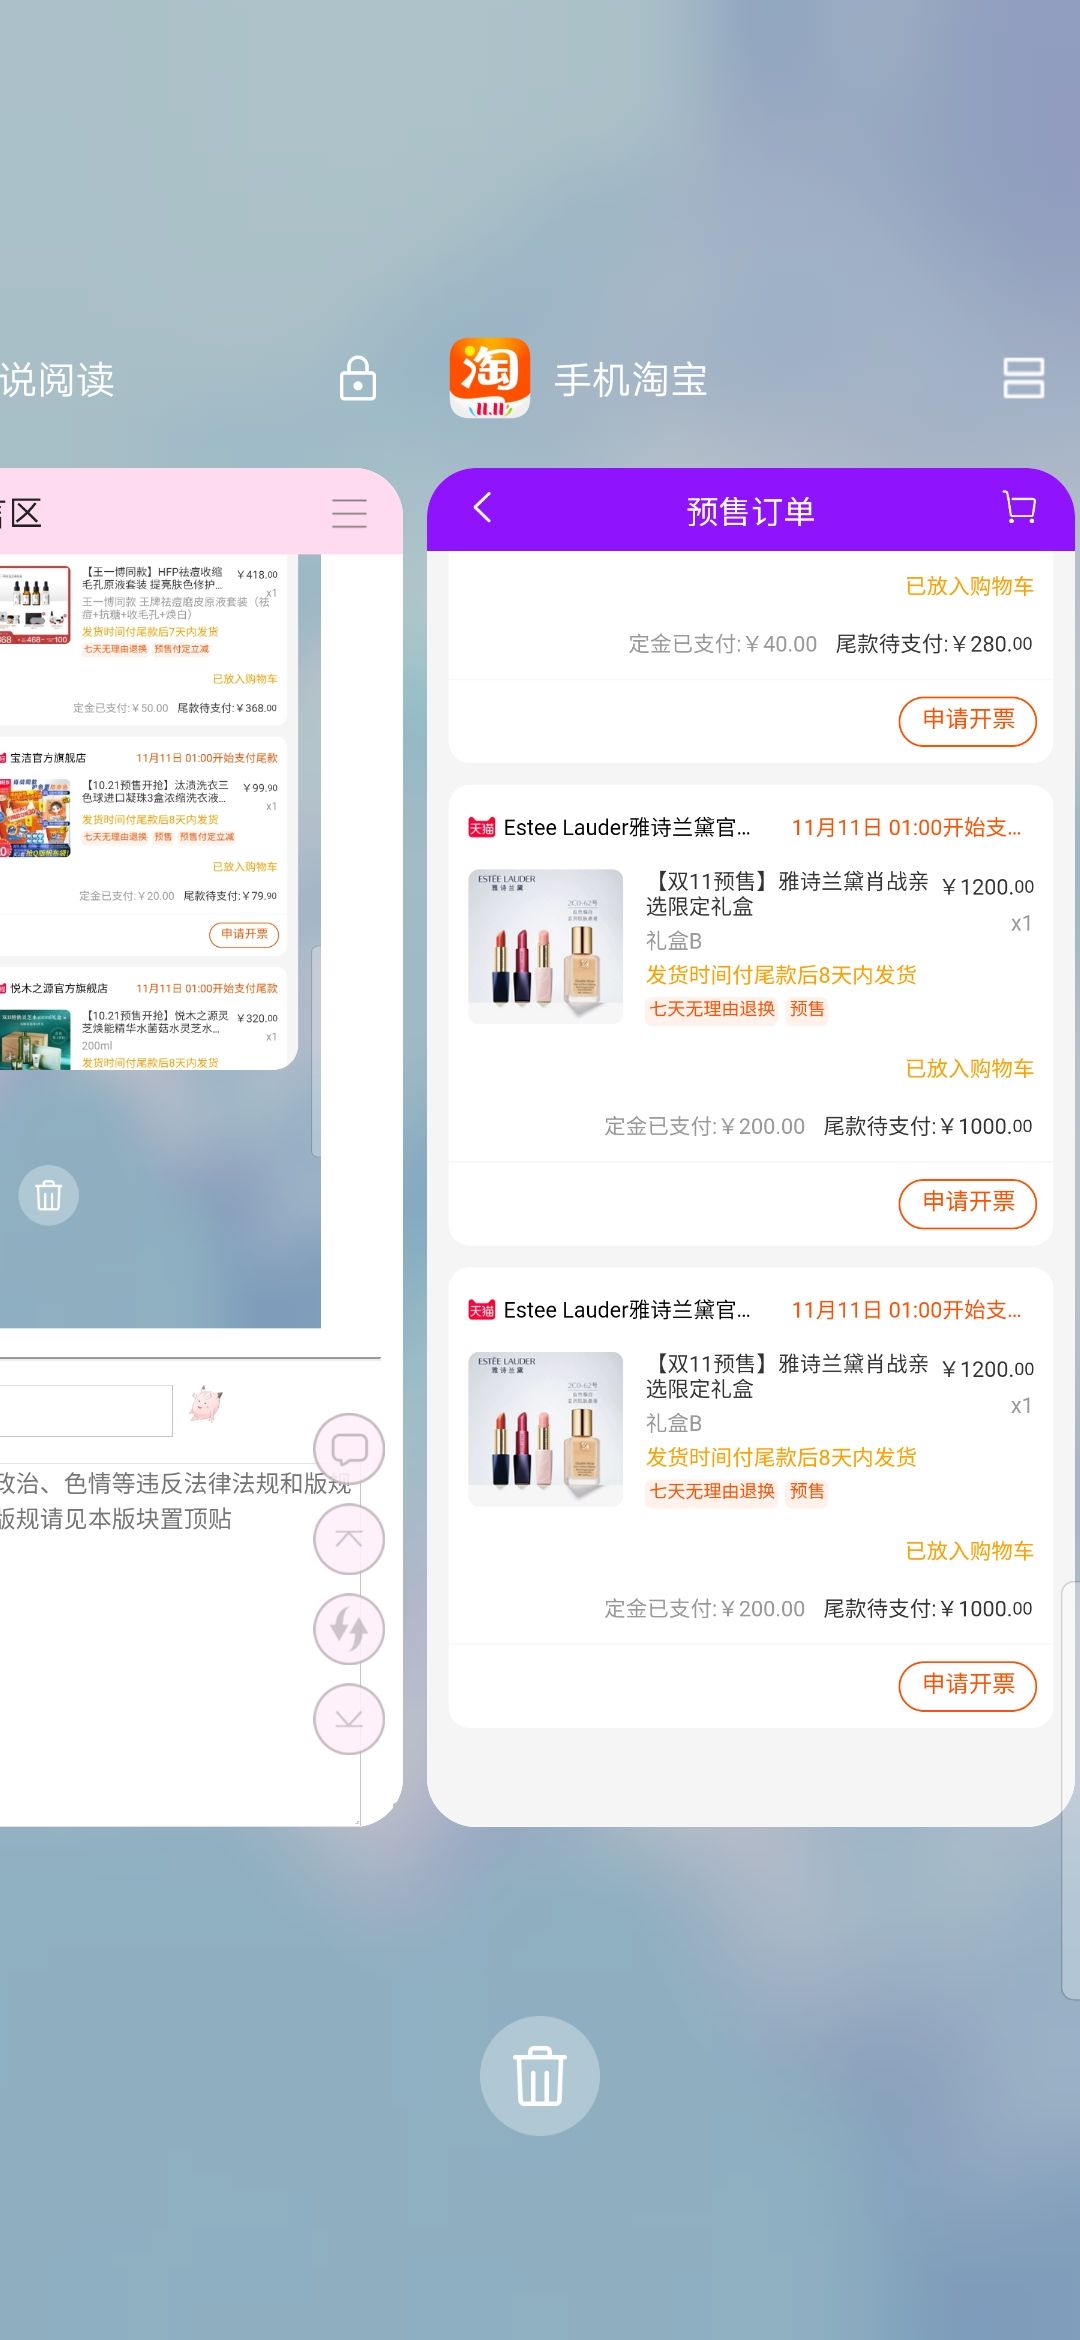 Screenshot_20191108_190706_com_huawei_android_launcher.jpg